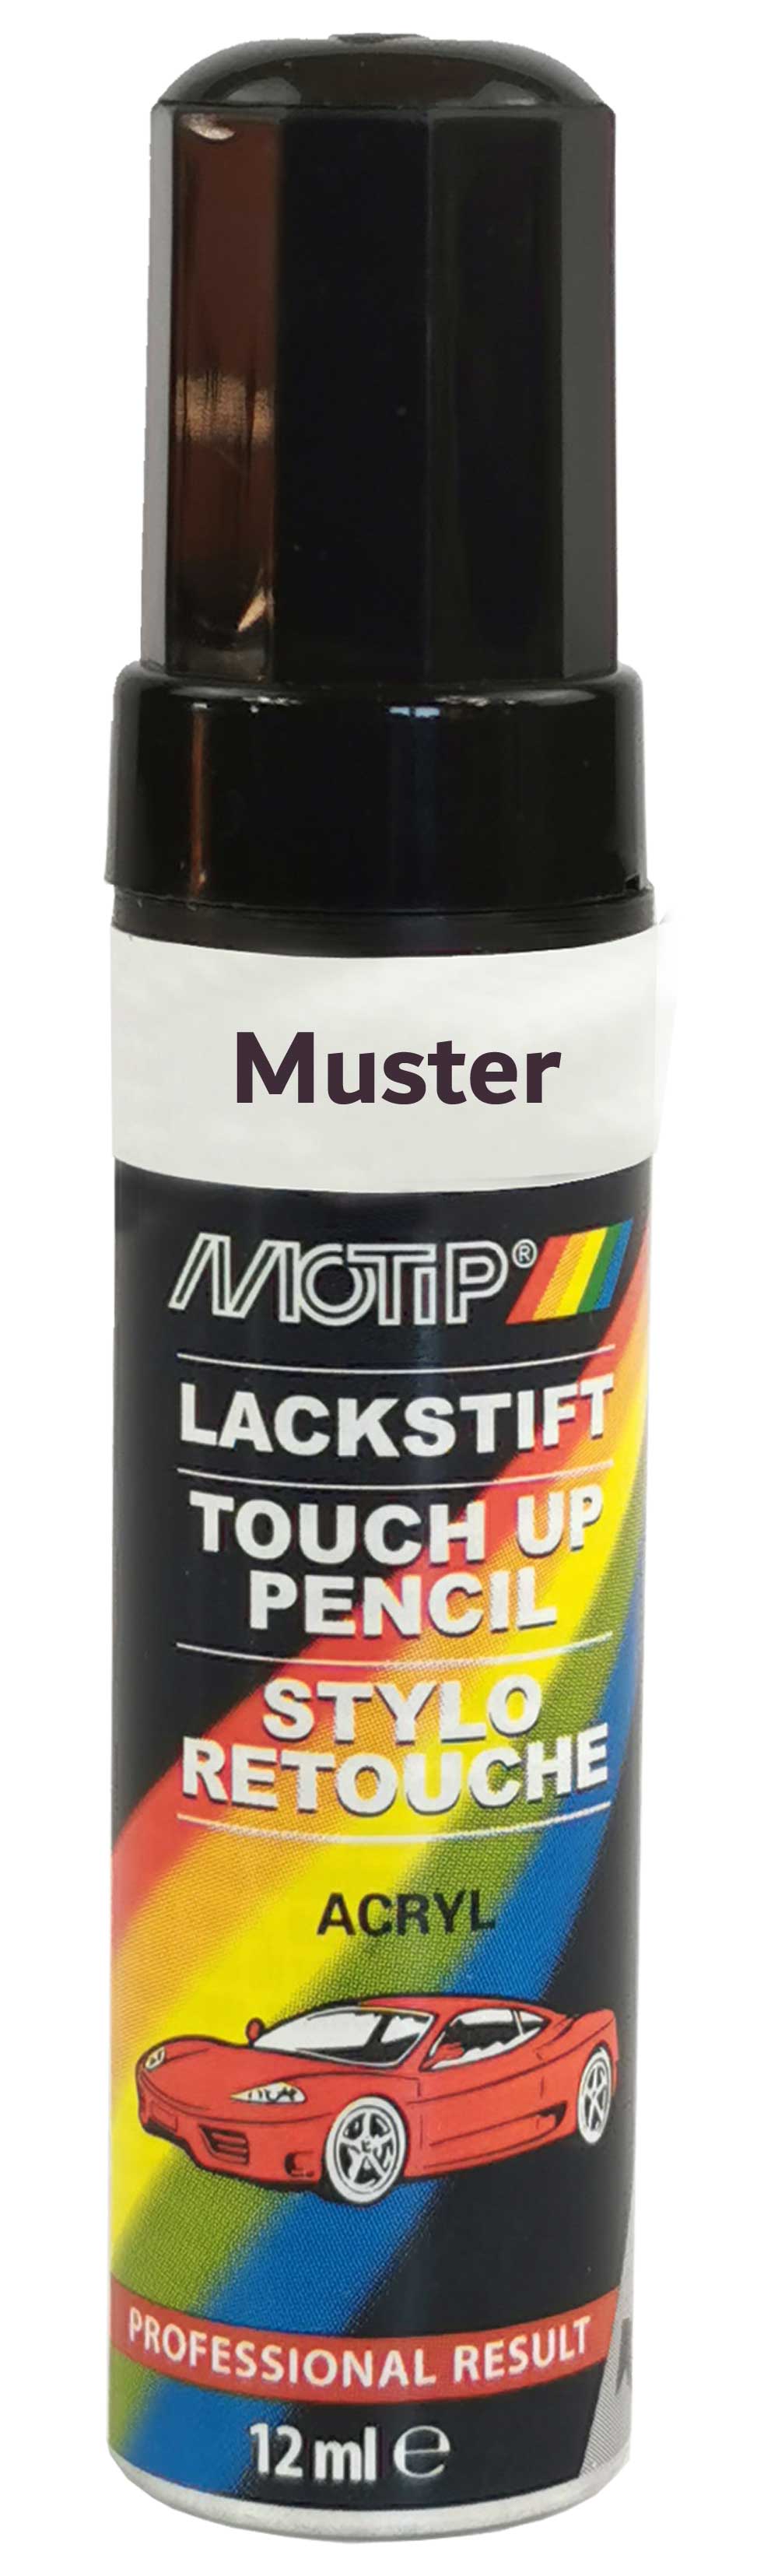 Motip Lack-Stift gelb 12ml 952255